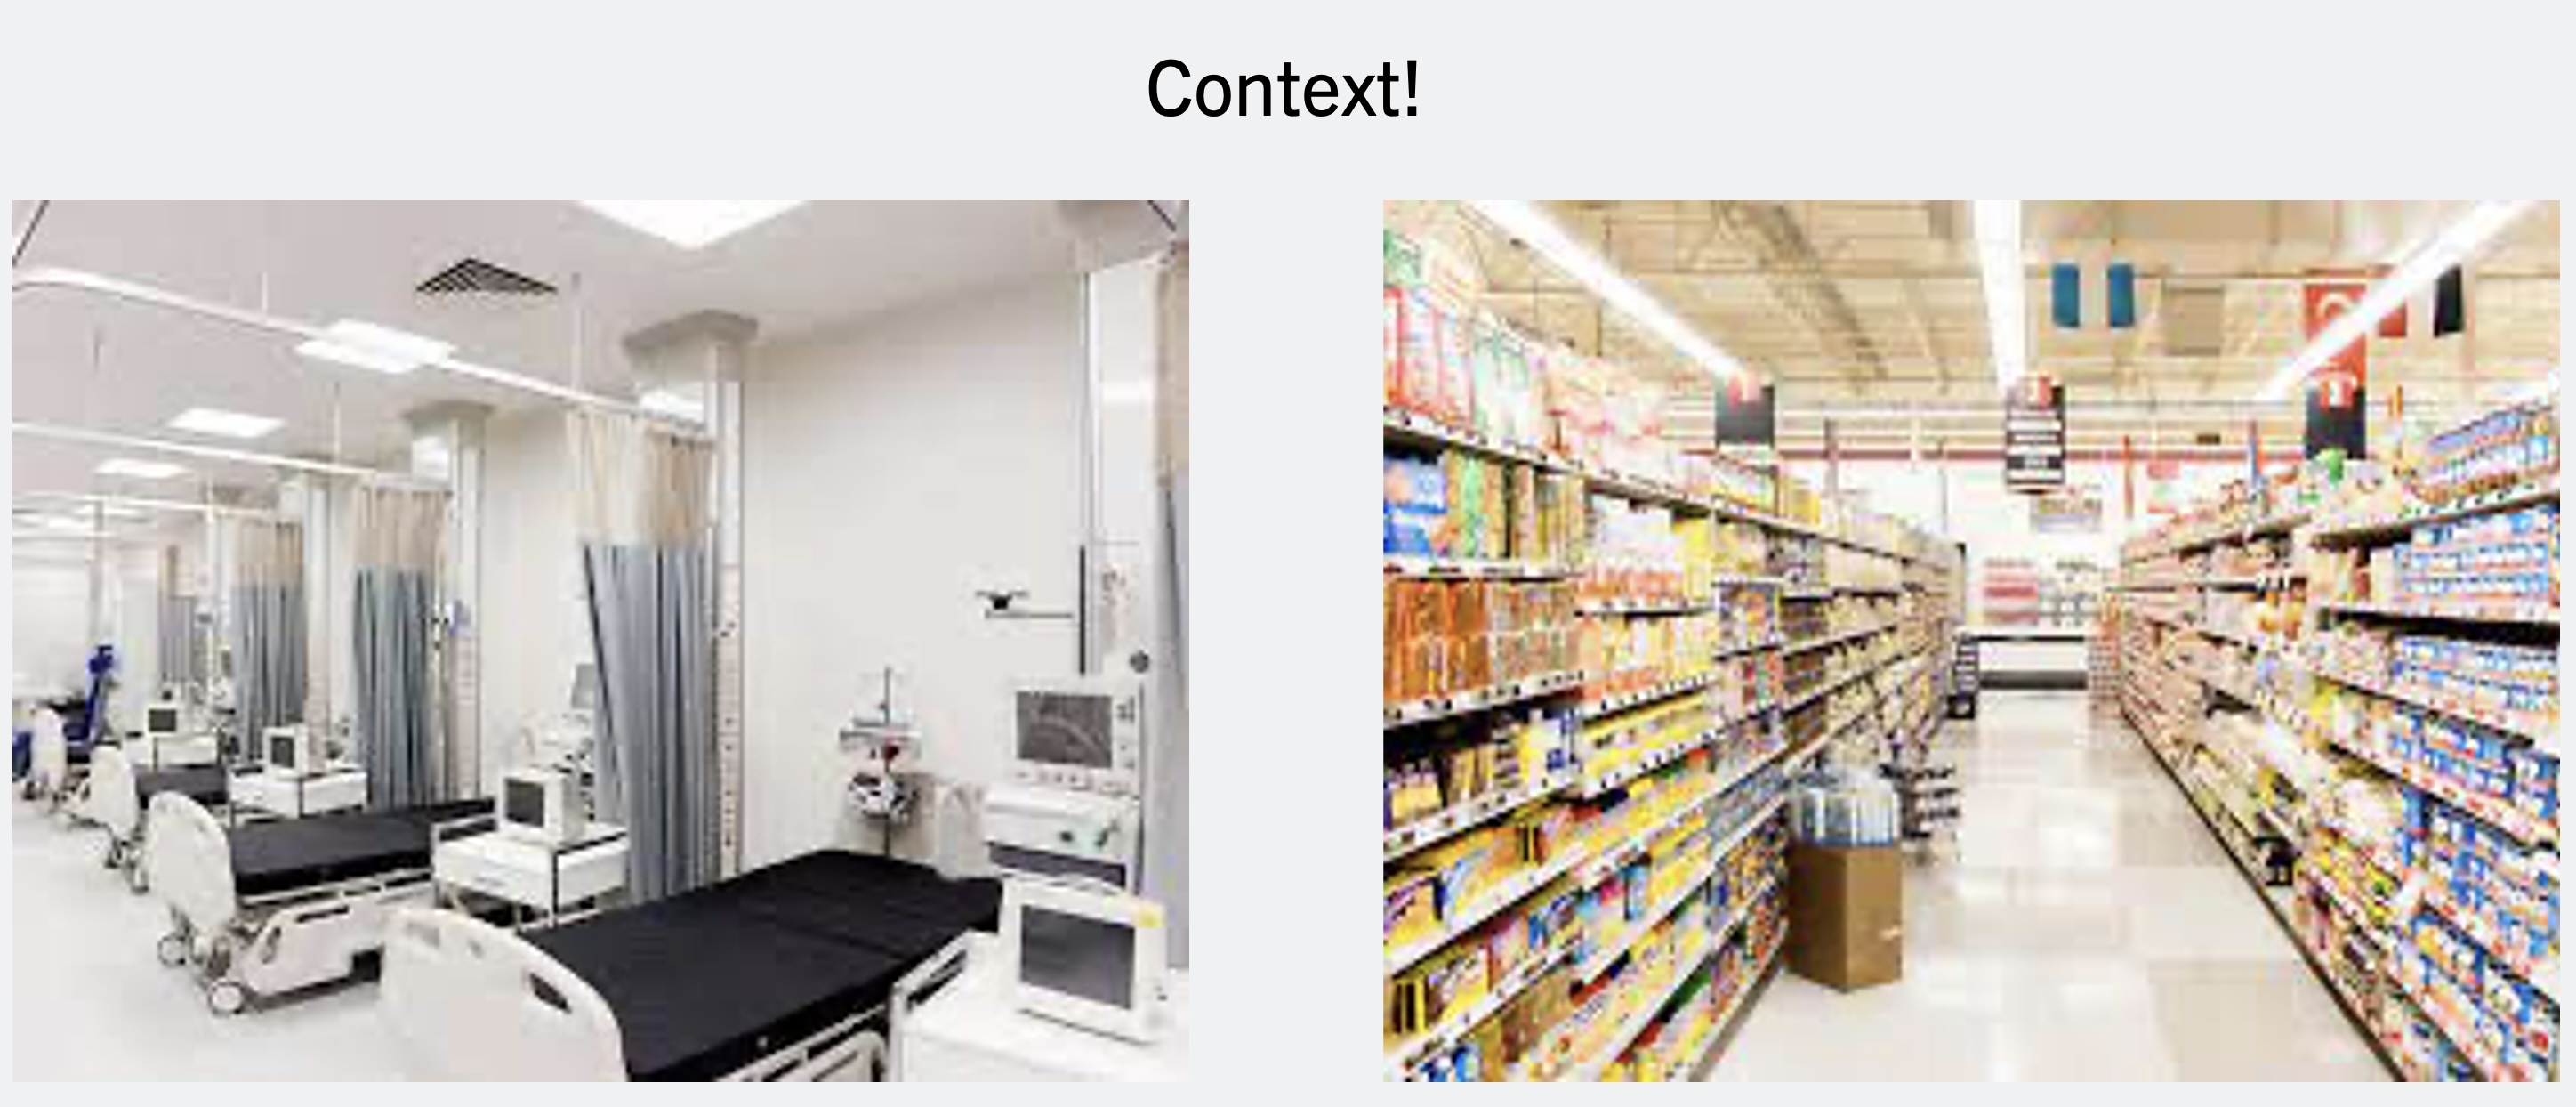 Supermarket context vs Hospital context